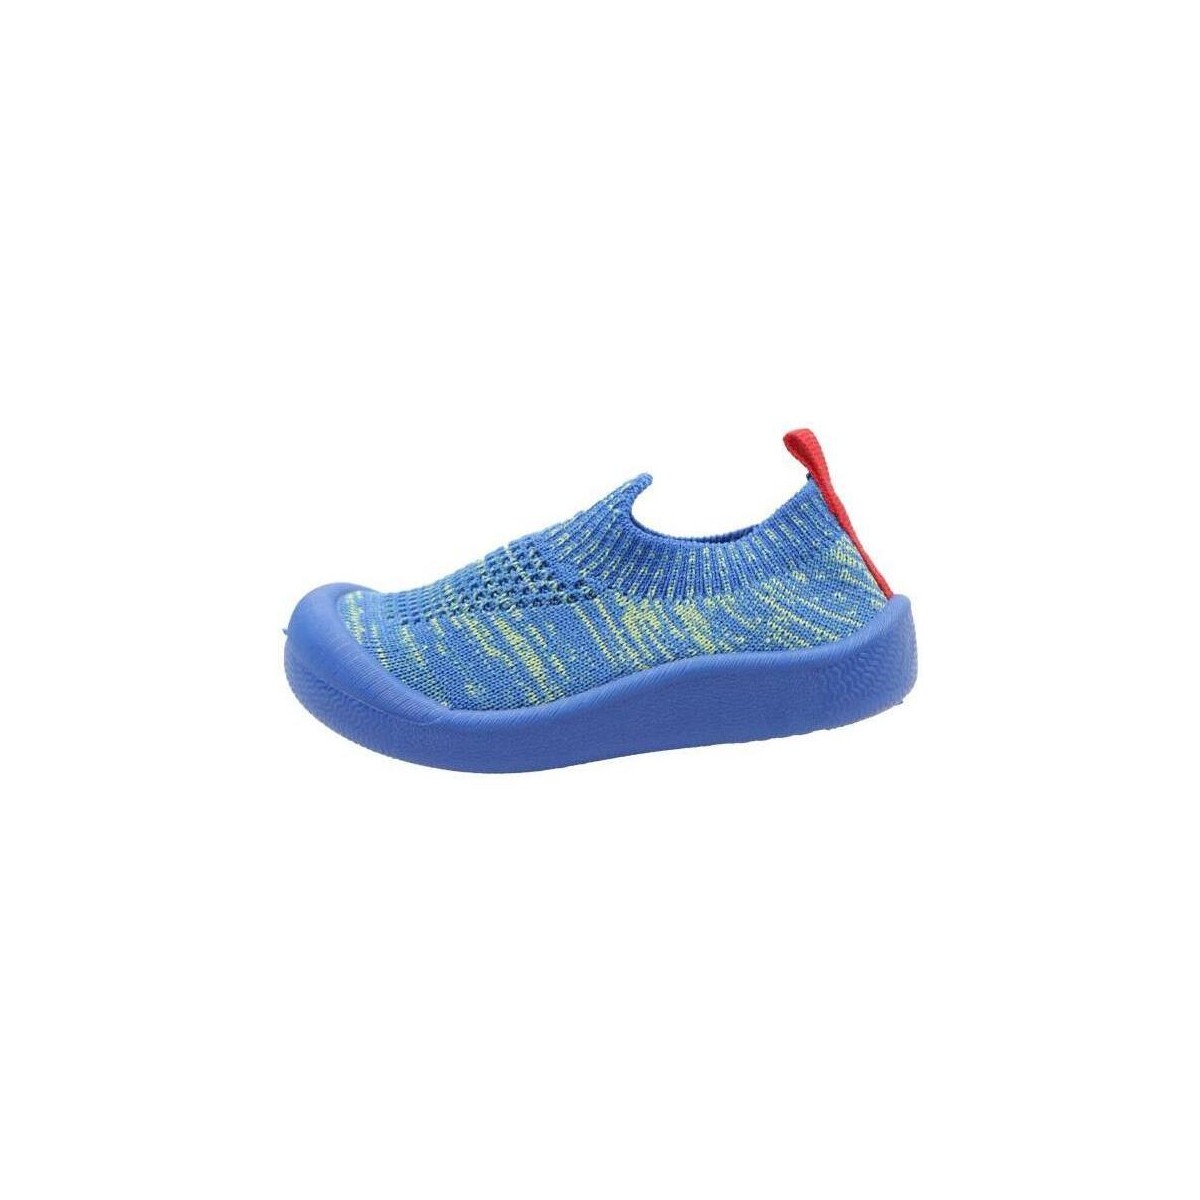 Schuhe Jungen Sneaker Low Kickers KICK EASY Blau